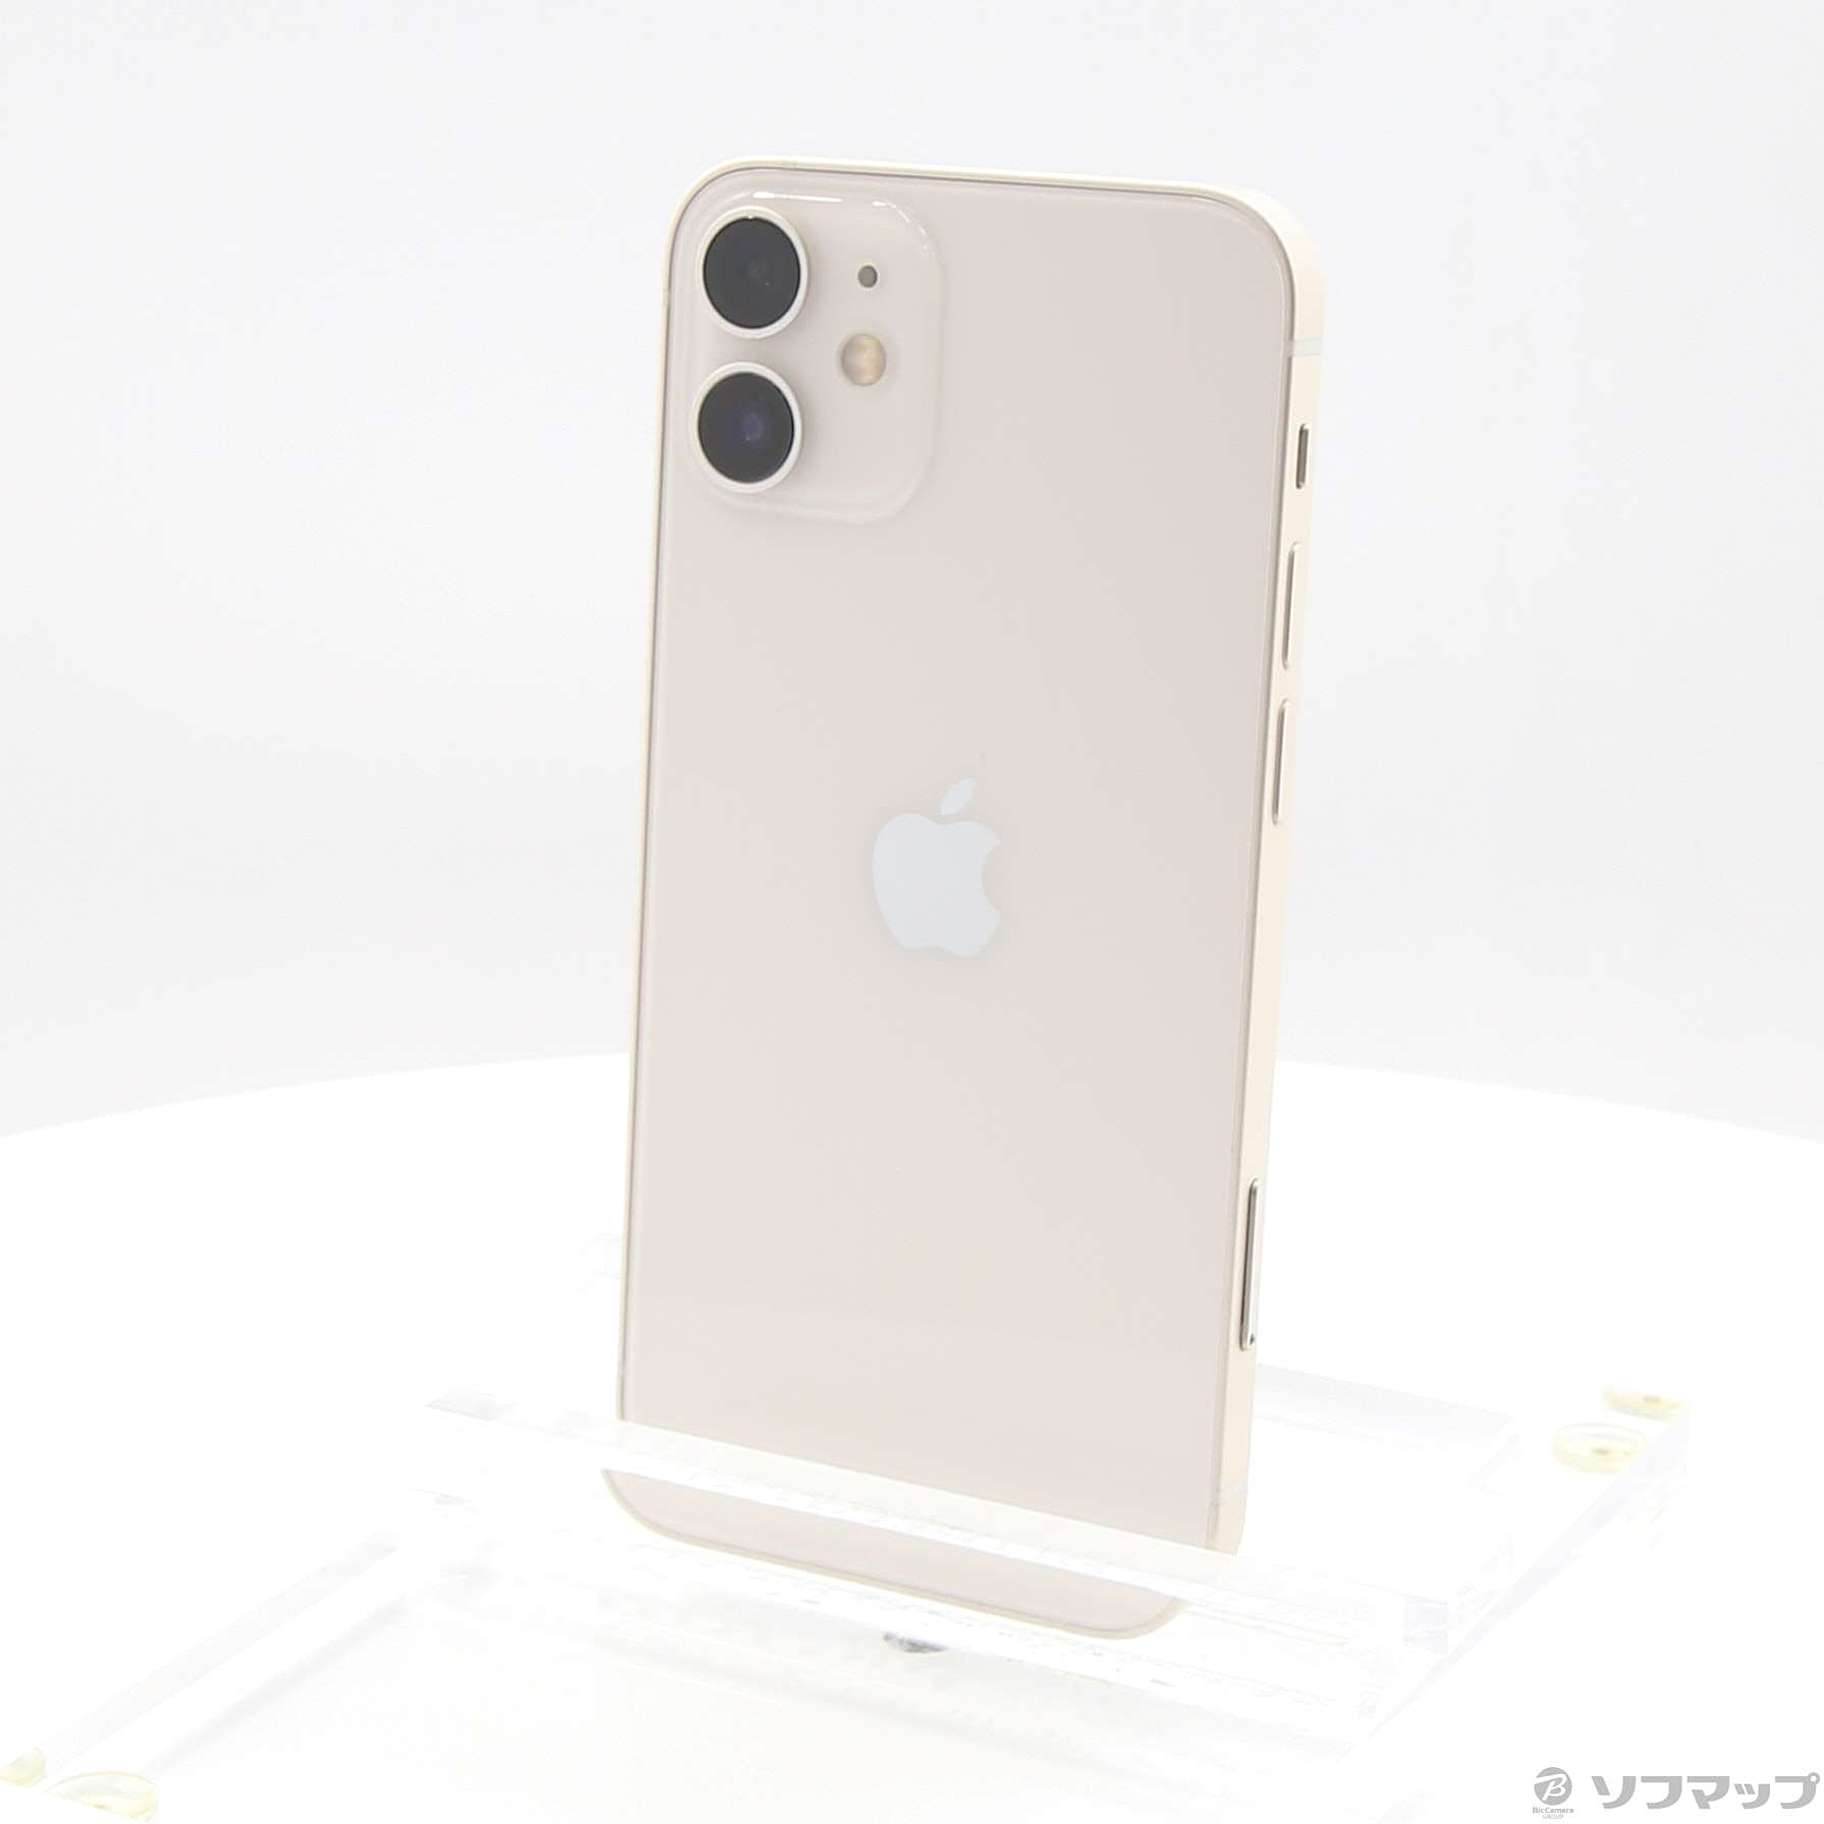 iPhone12 White(ホワイト) 128GBsimフリー - スマートフォン本体